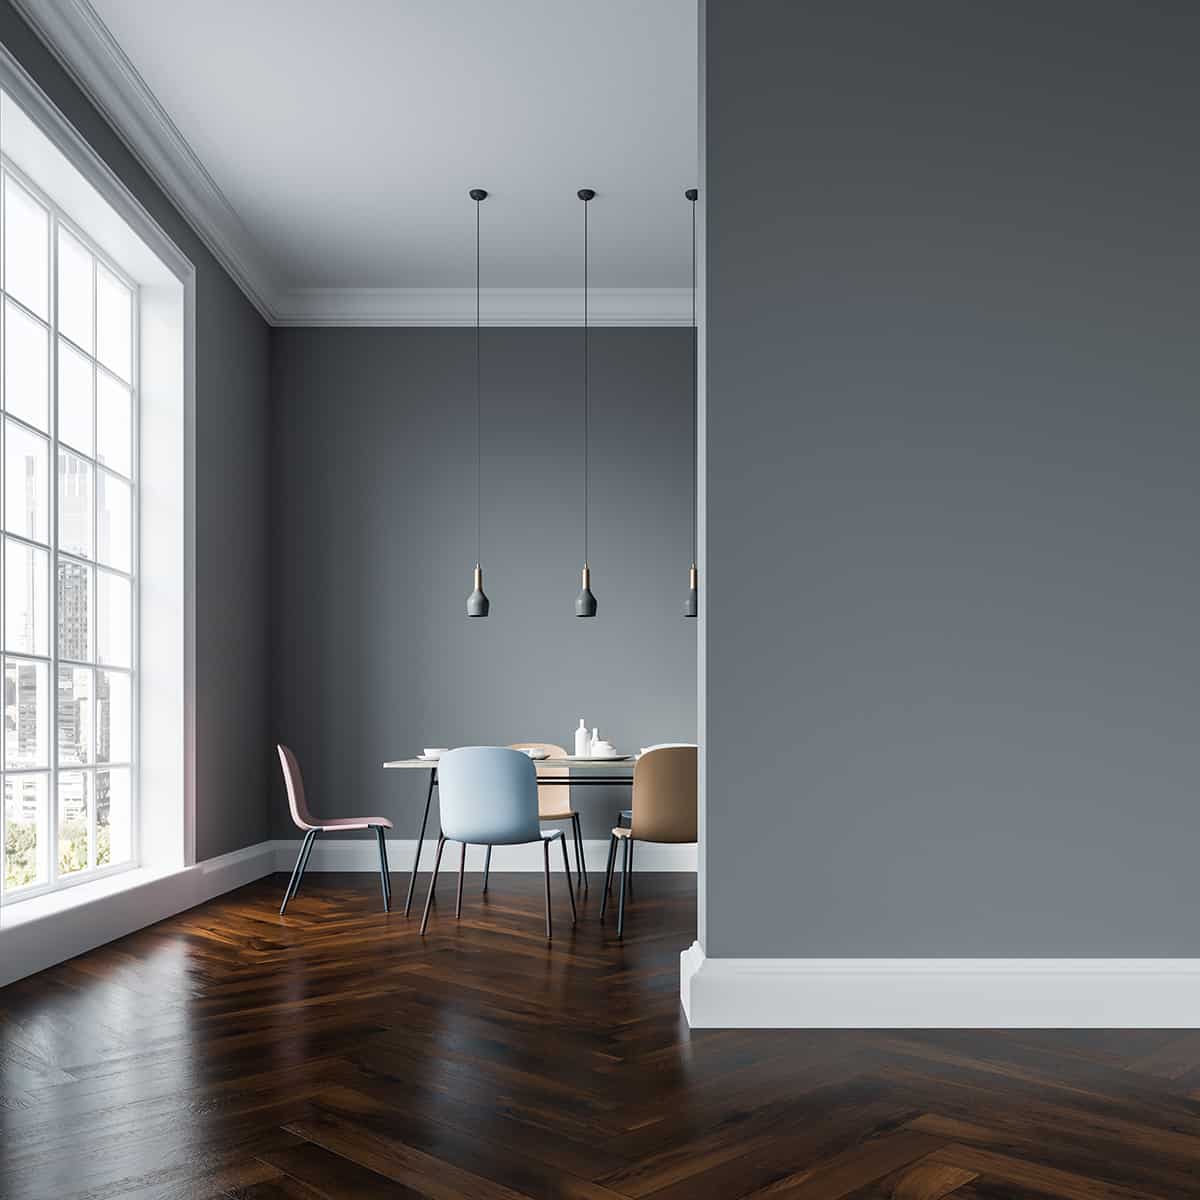 Color Wood Floor Goes With Gray Walls, Hardwood Flooring With Grey Undertones